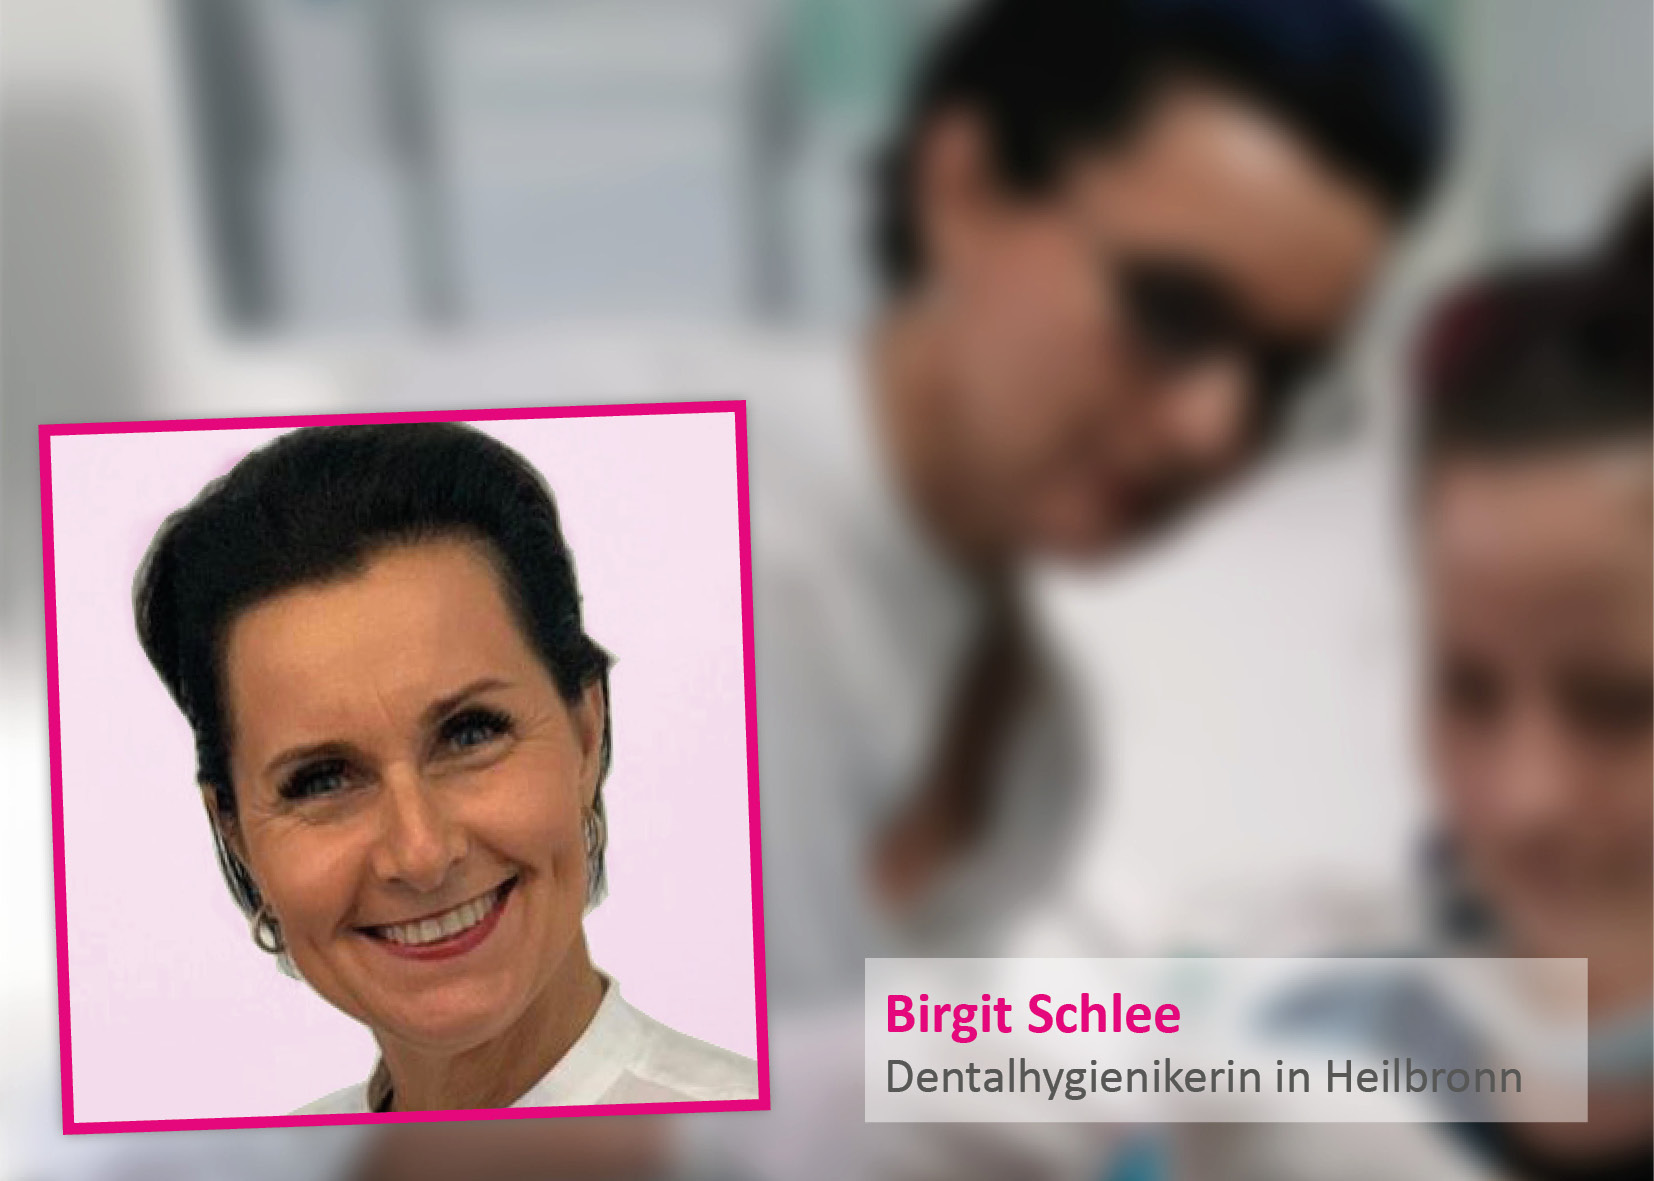 Birgit Schlee, Dentalhygienikerin